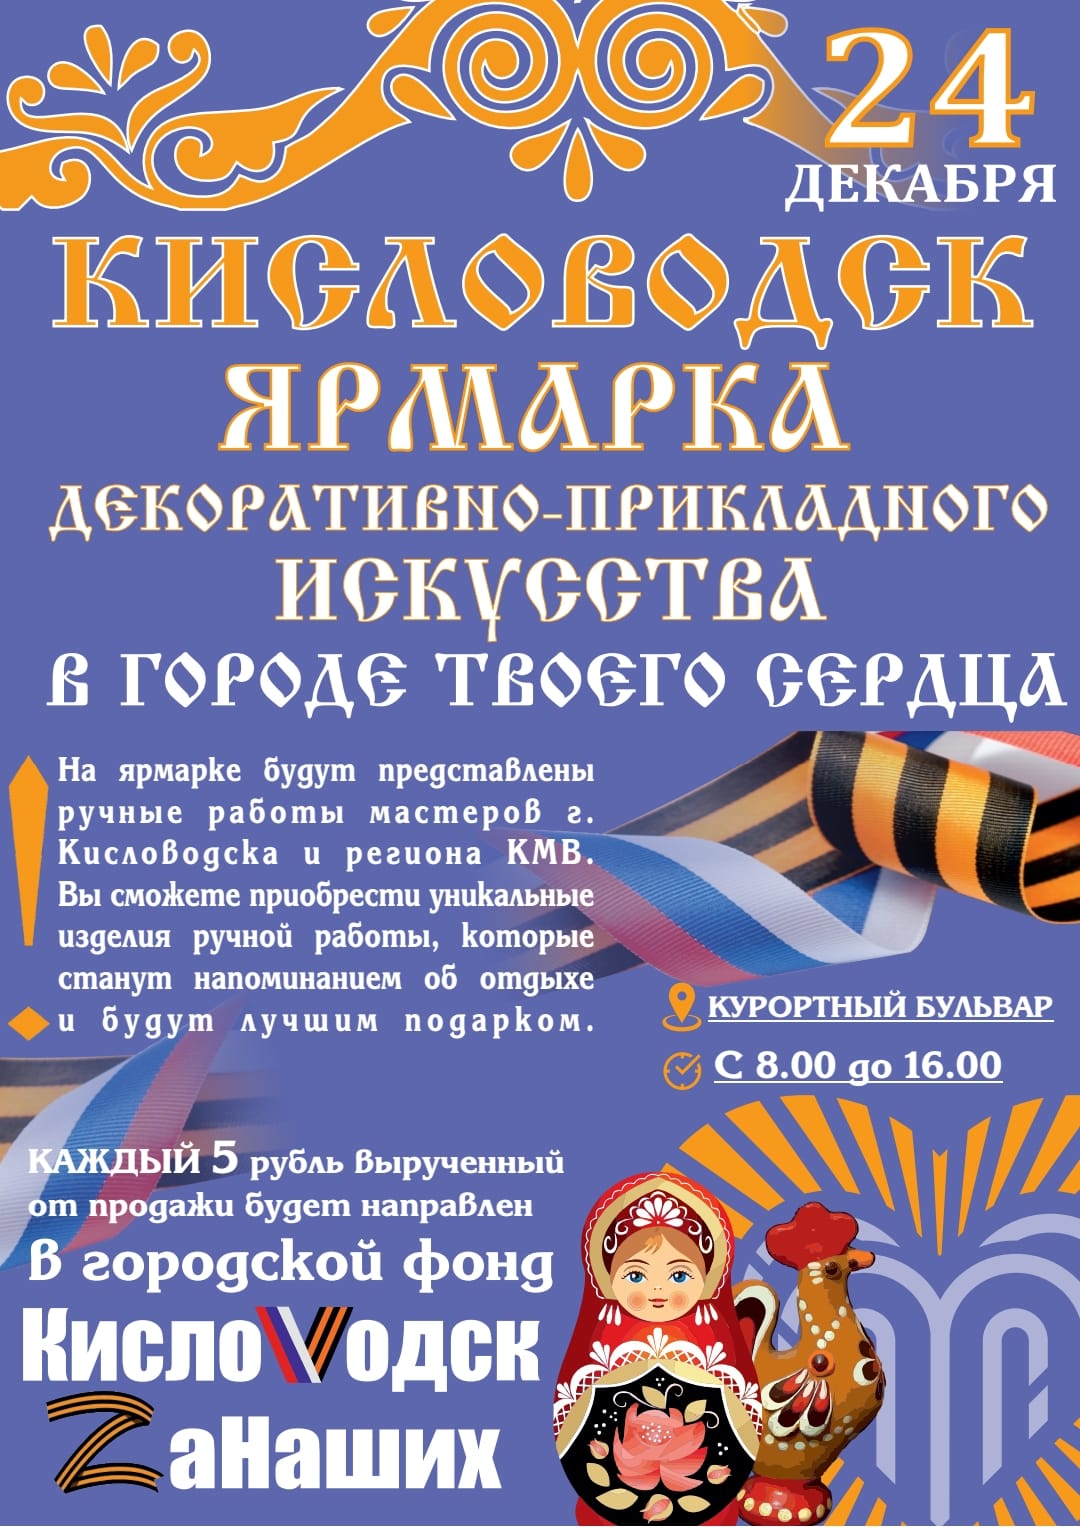 Главная предновогодняя ярмарка пройдёт в Кисловодске 24 декабря